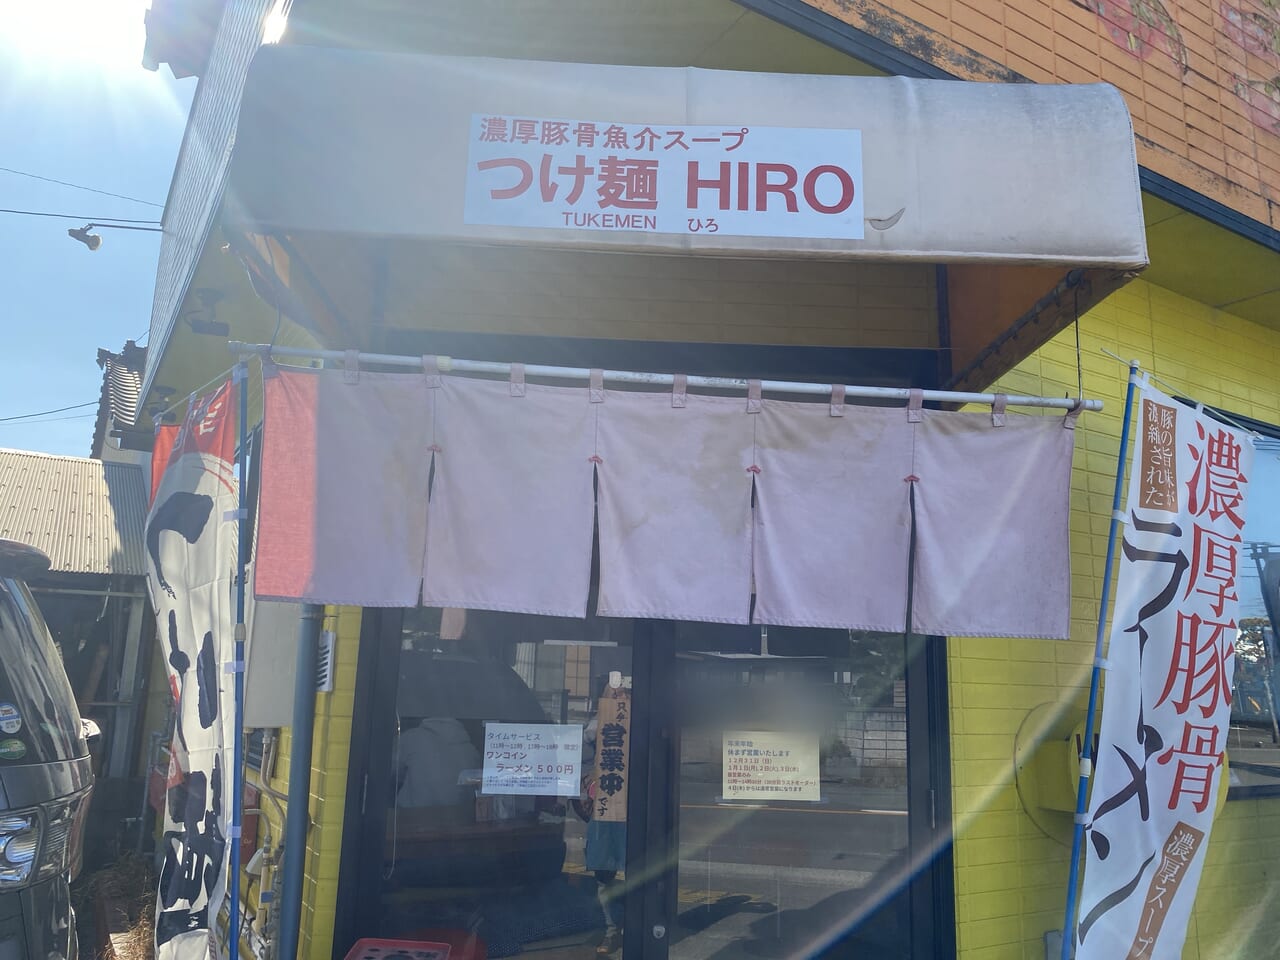 宮崎市グルメ 宮崎ラーメン つけ麺HIRO ワンコインタイムサービス 画像6